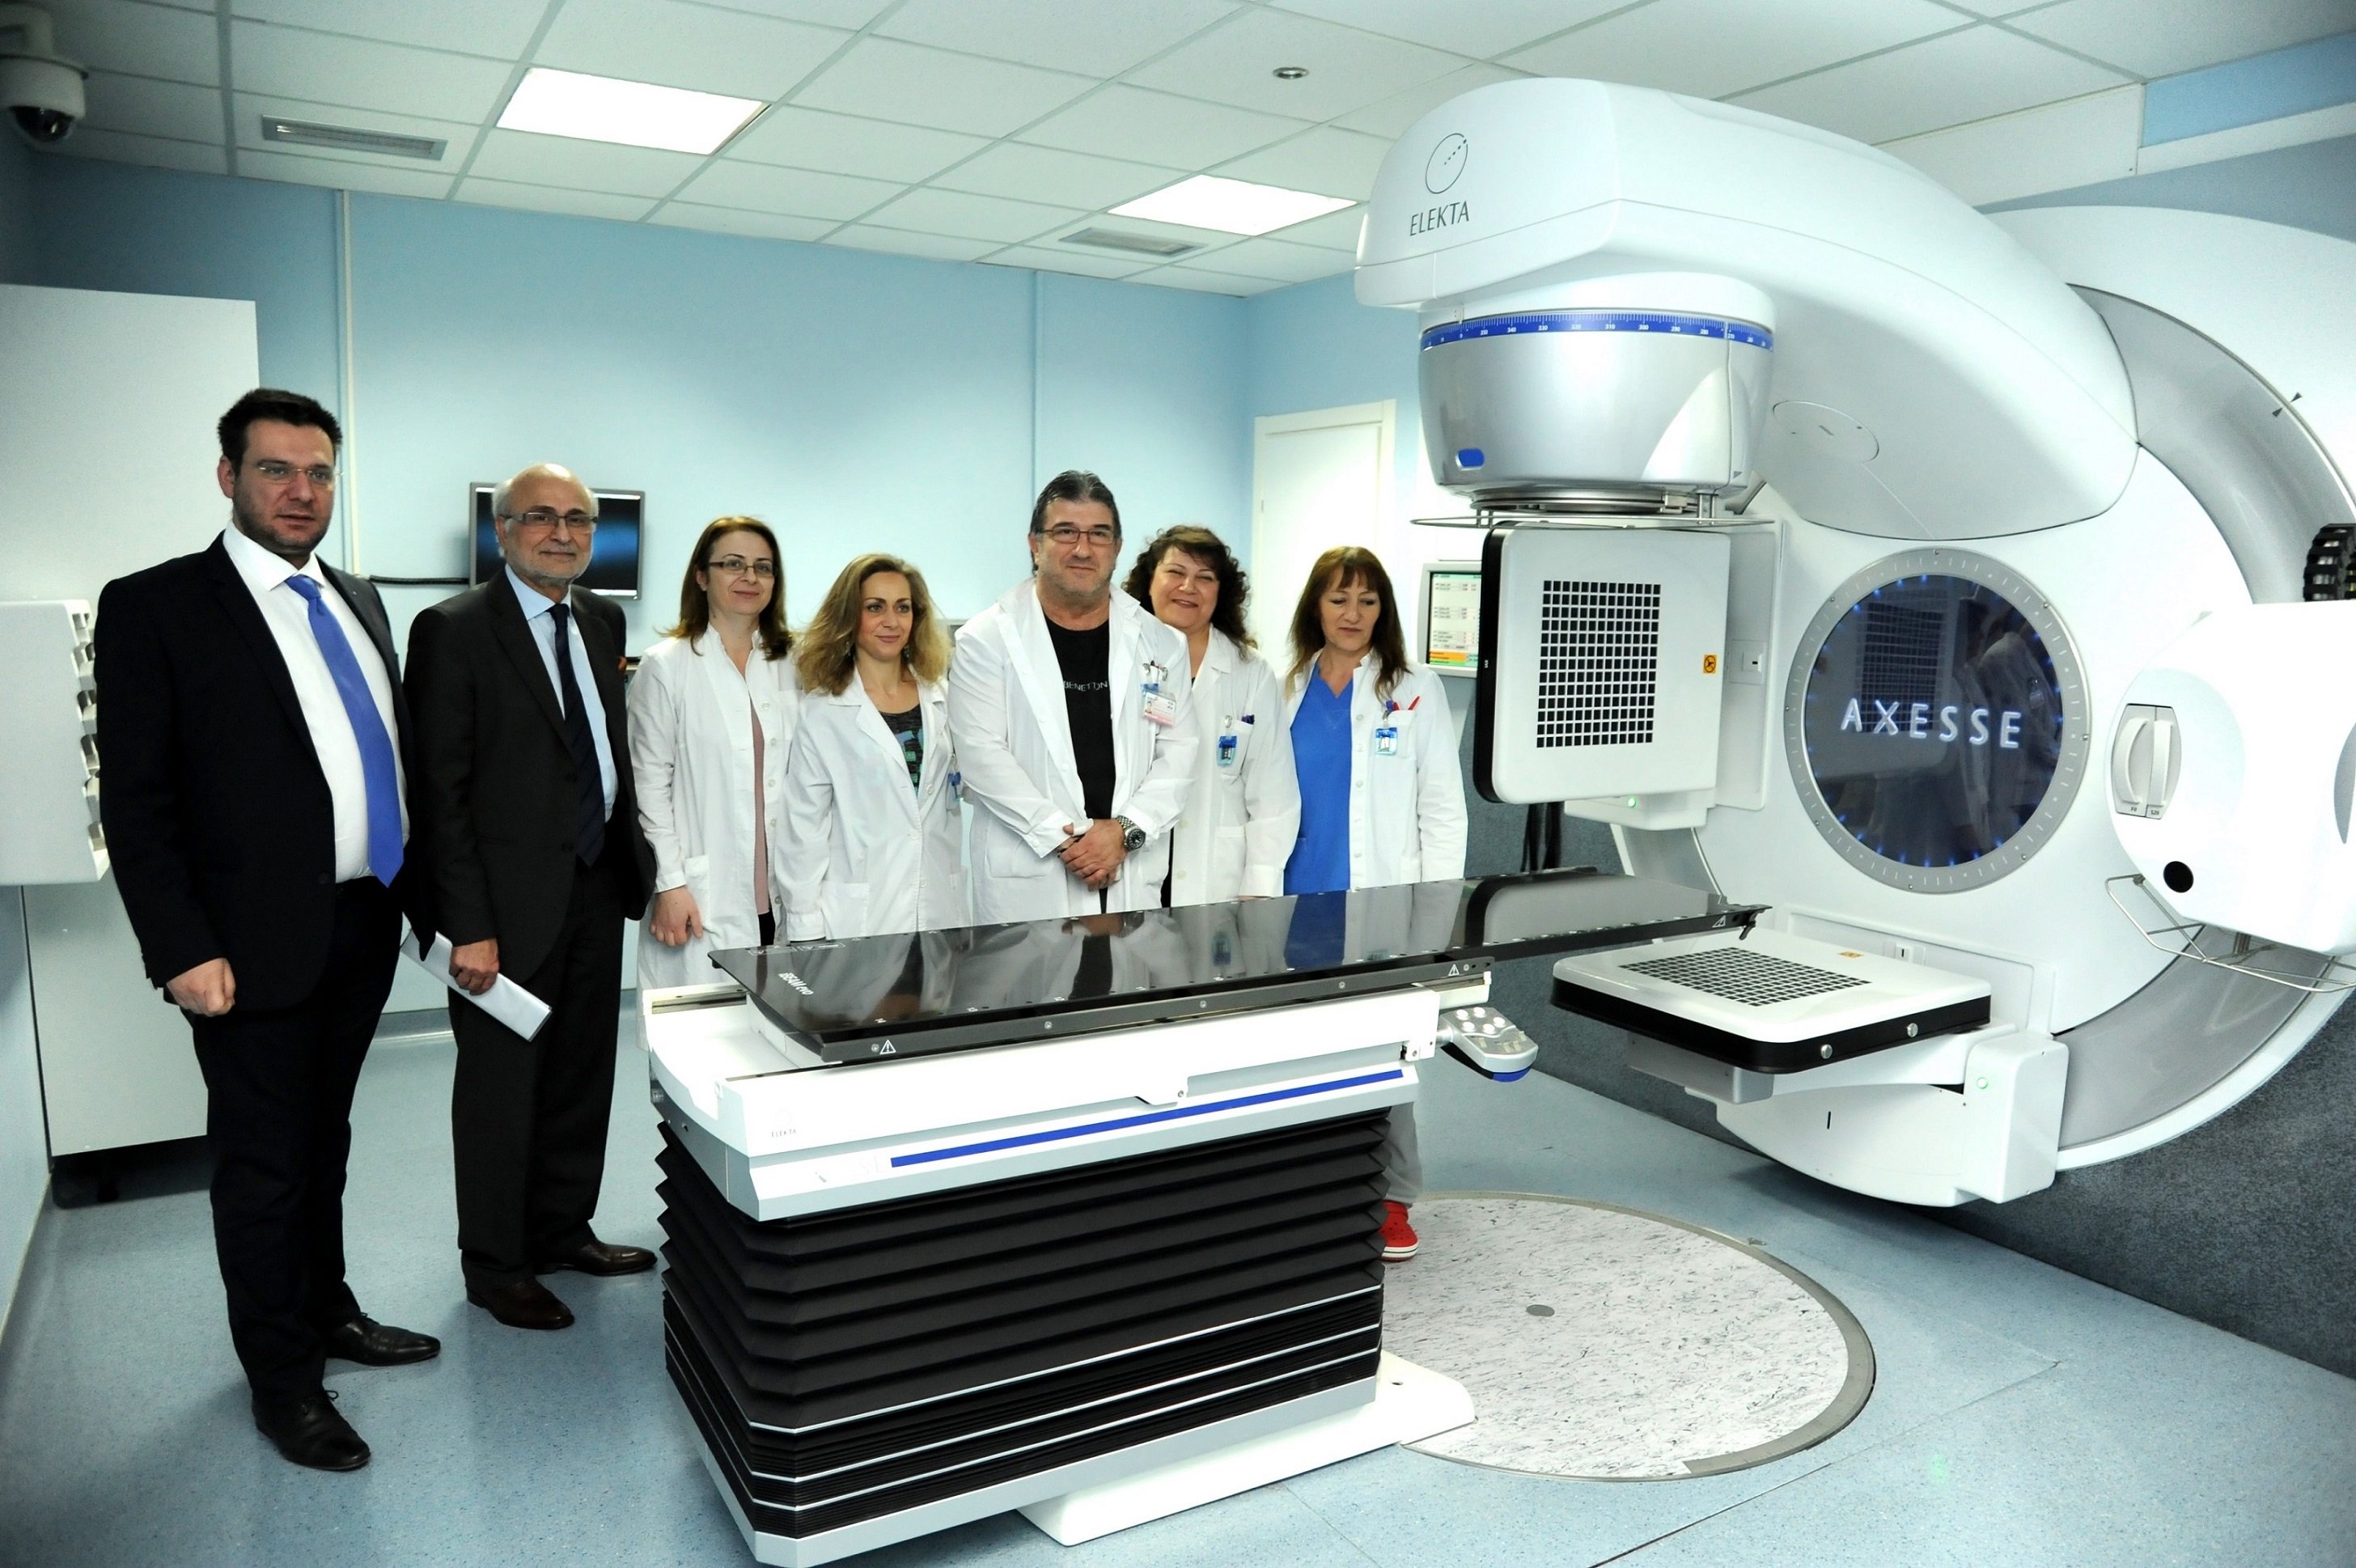 Δωρεά τεχνολογικού εξοπλισμού υψηλών προδιαγραφών σε πέντε νοσοκομεία από την ΟΠΑΠ Α.Ε.